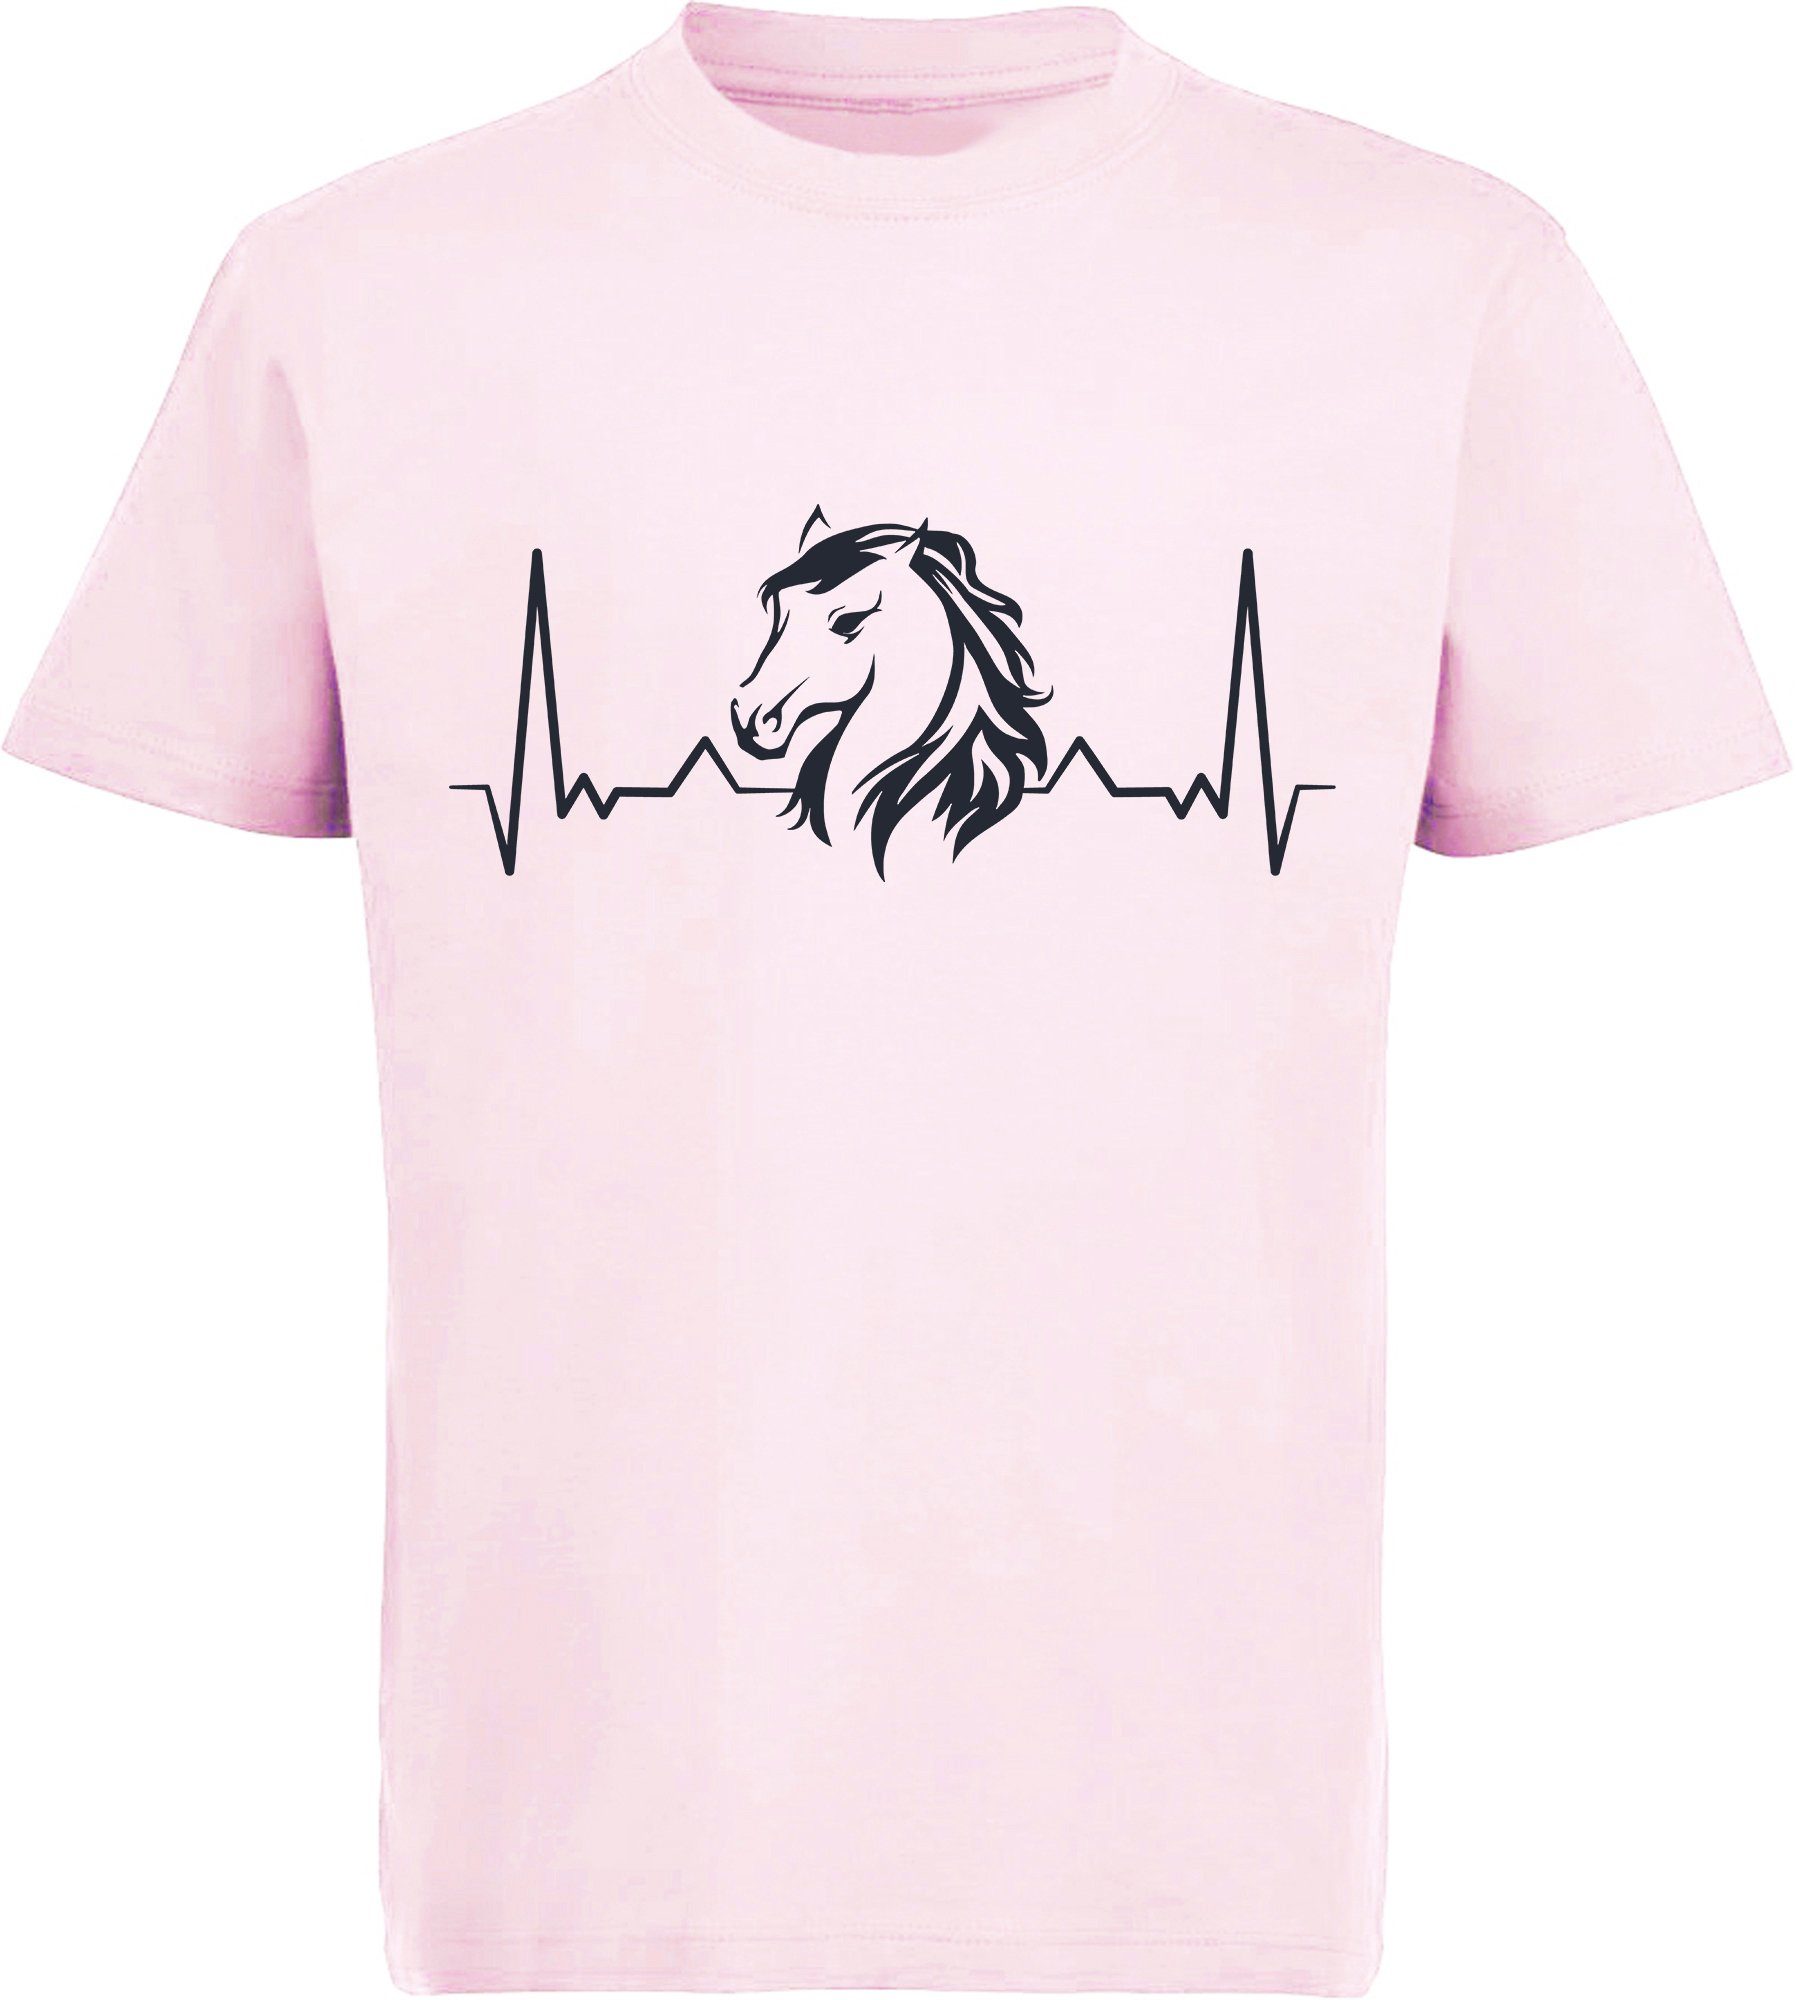 MyDesign24 Print-Shirt bedrucktes Mädchen T-Shirt Herzschlaglinie mit Pferdekopf Baumwollshirt mit Aufdruck, i143 rosa | T-Shirts